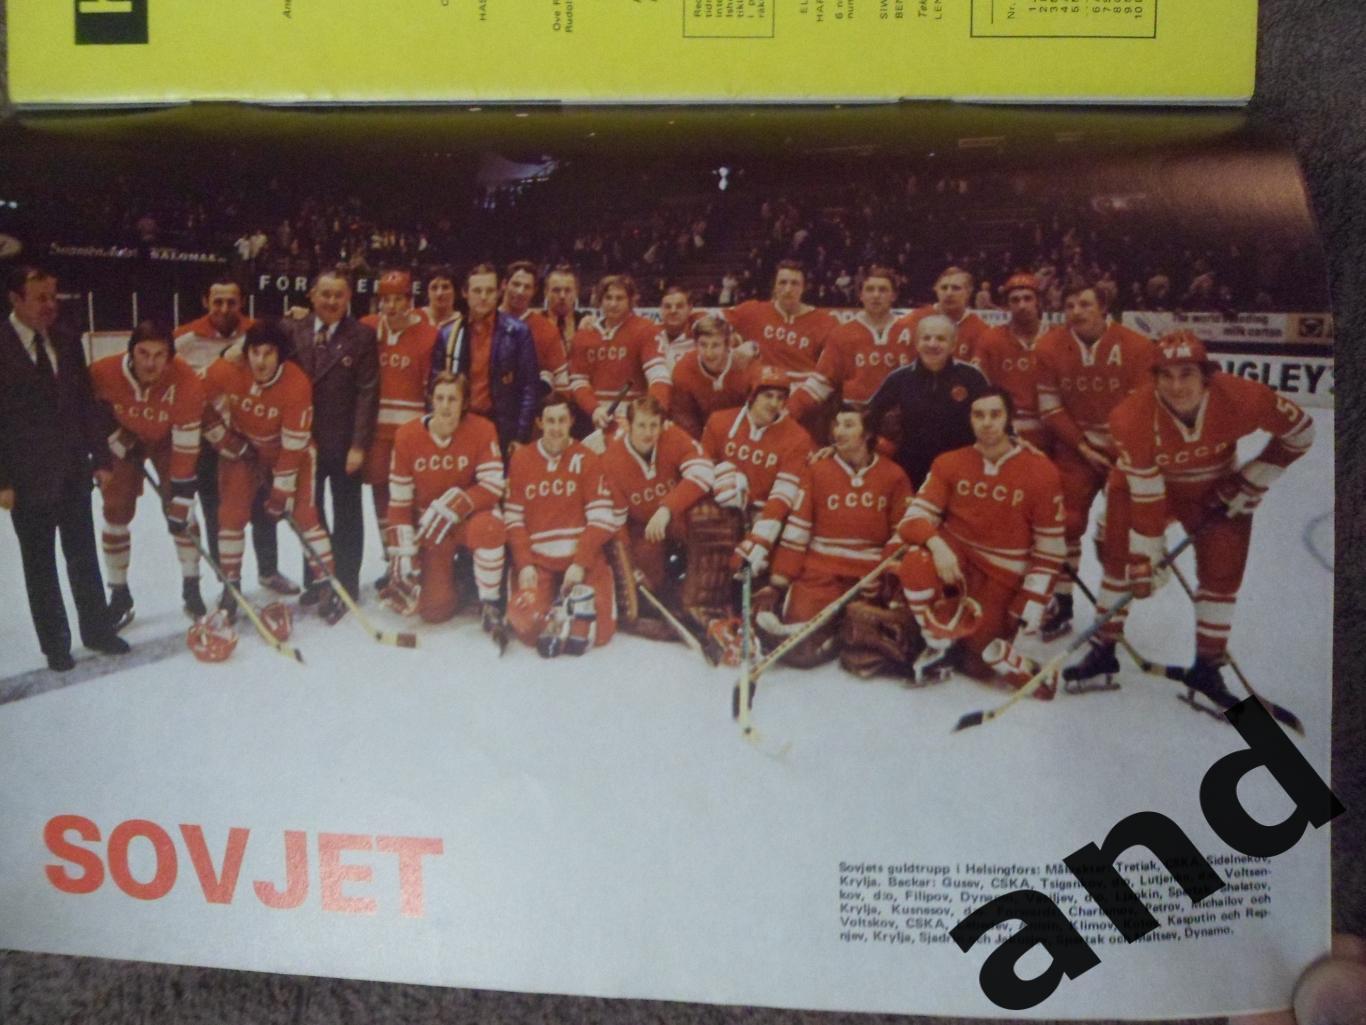 журнал Хоккей (Швеция) № 7 (1974) постер сб. СССР 1